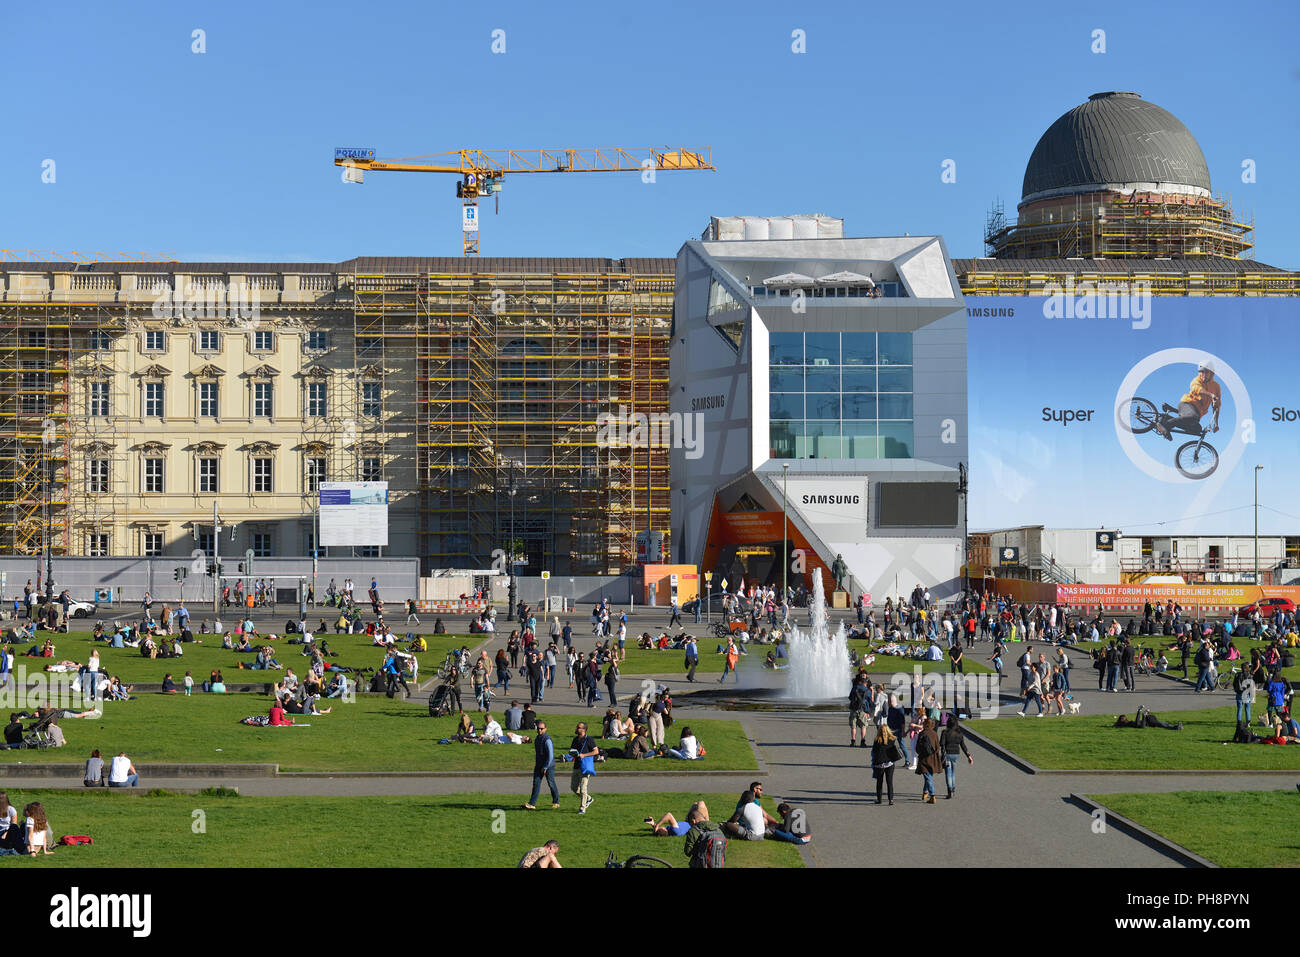 Baustelle, Humboldtforum, Schlossplatz, Unter den Linden, Mitte, Berlin, Deutschland Stock Photo